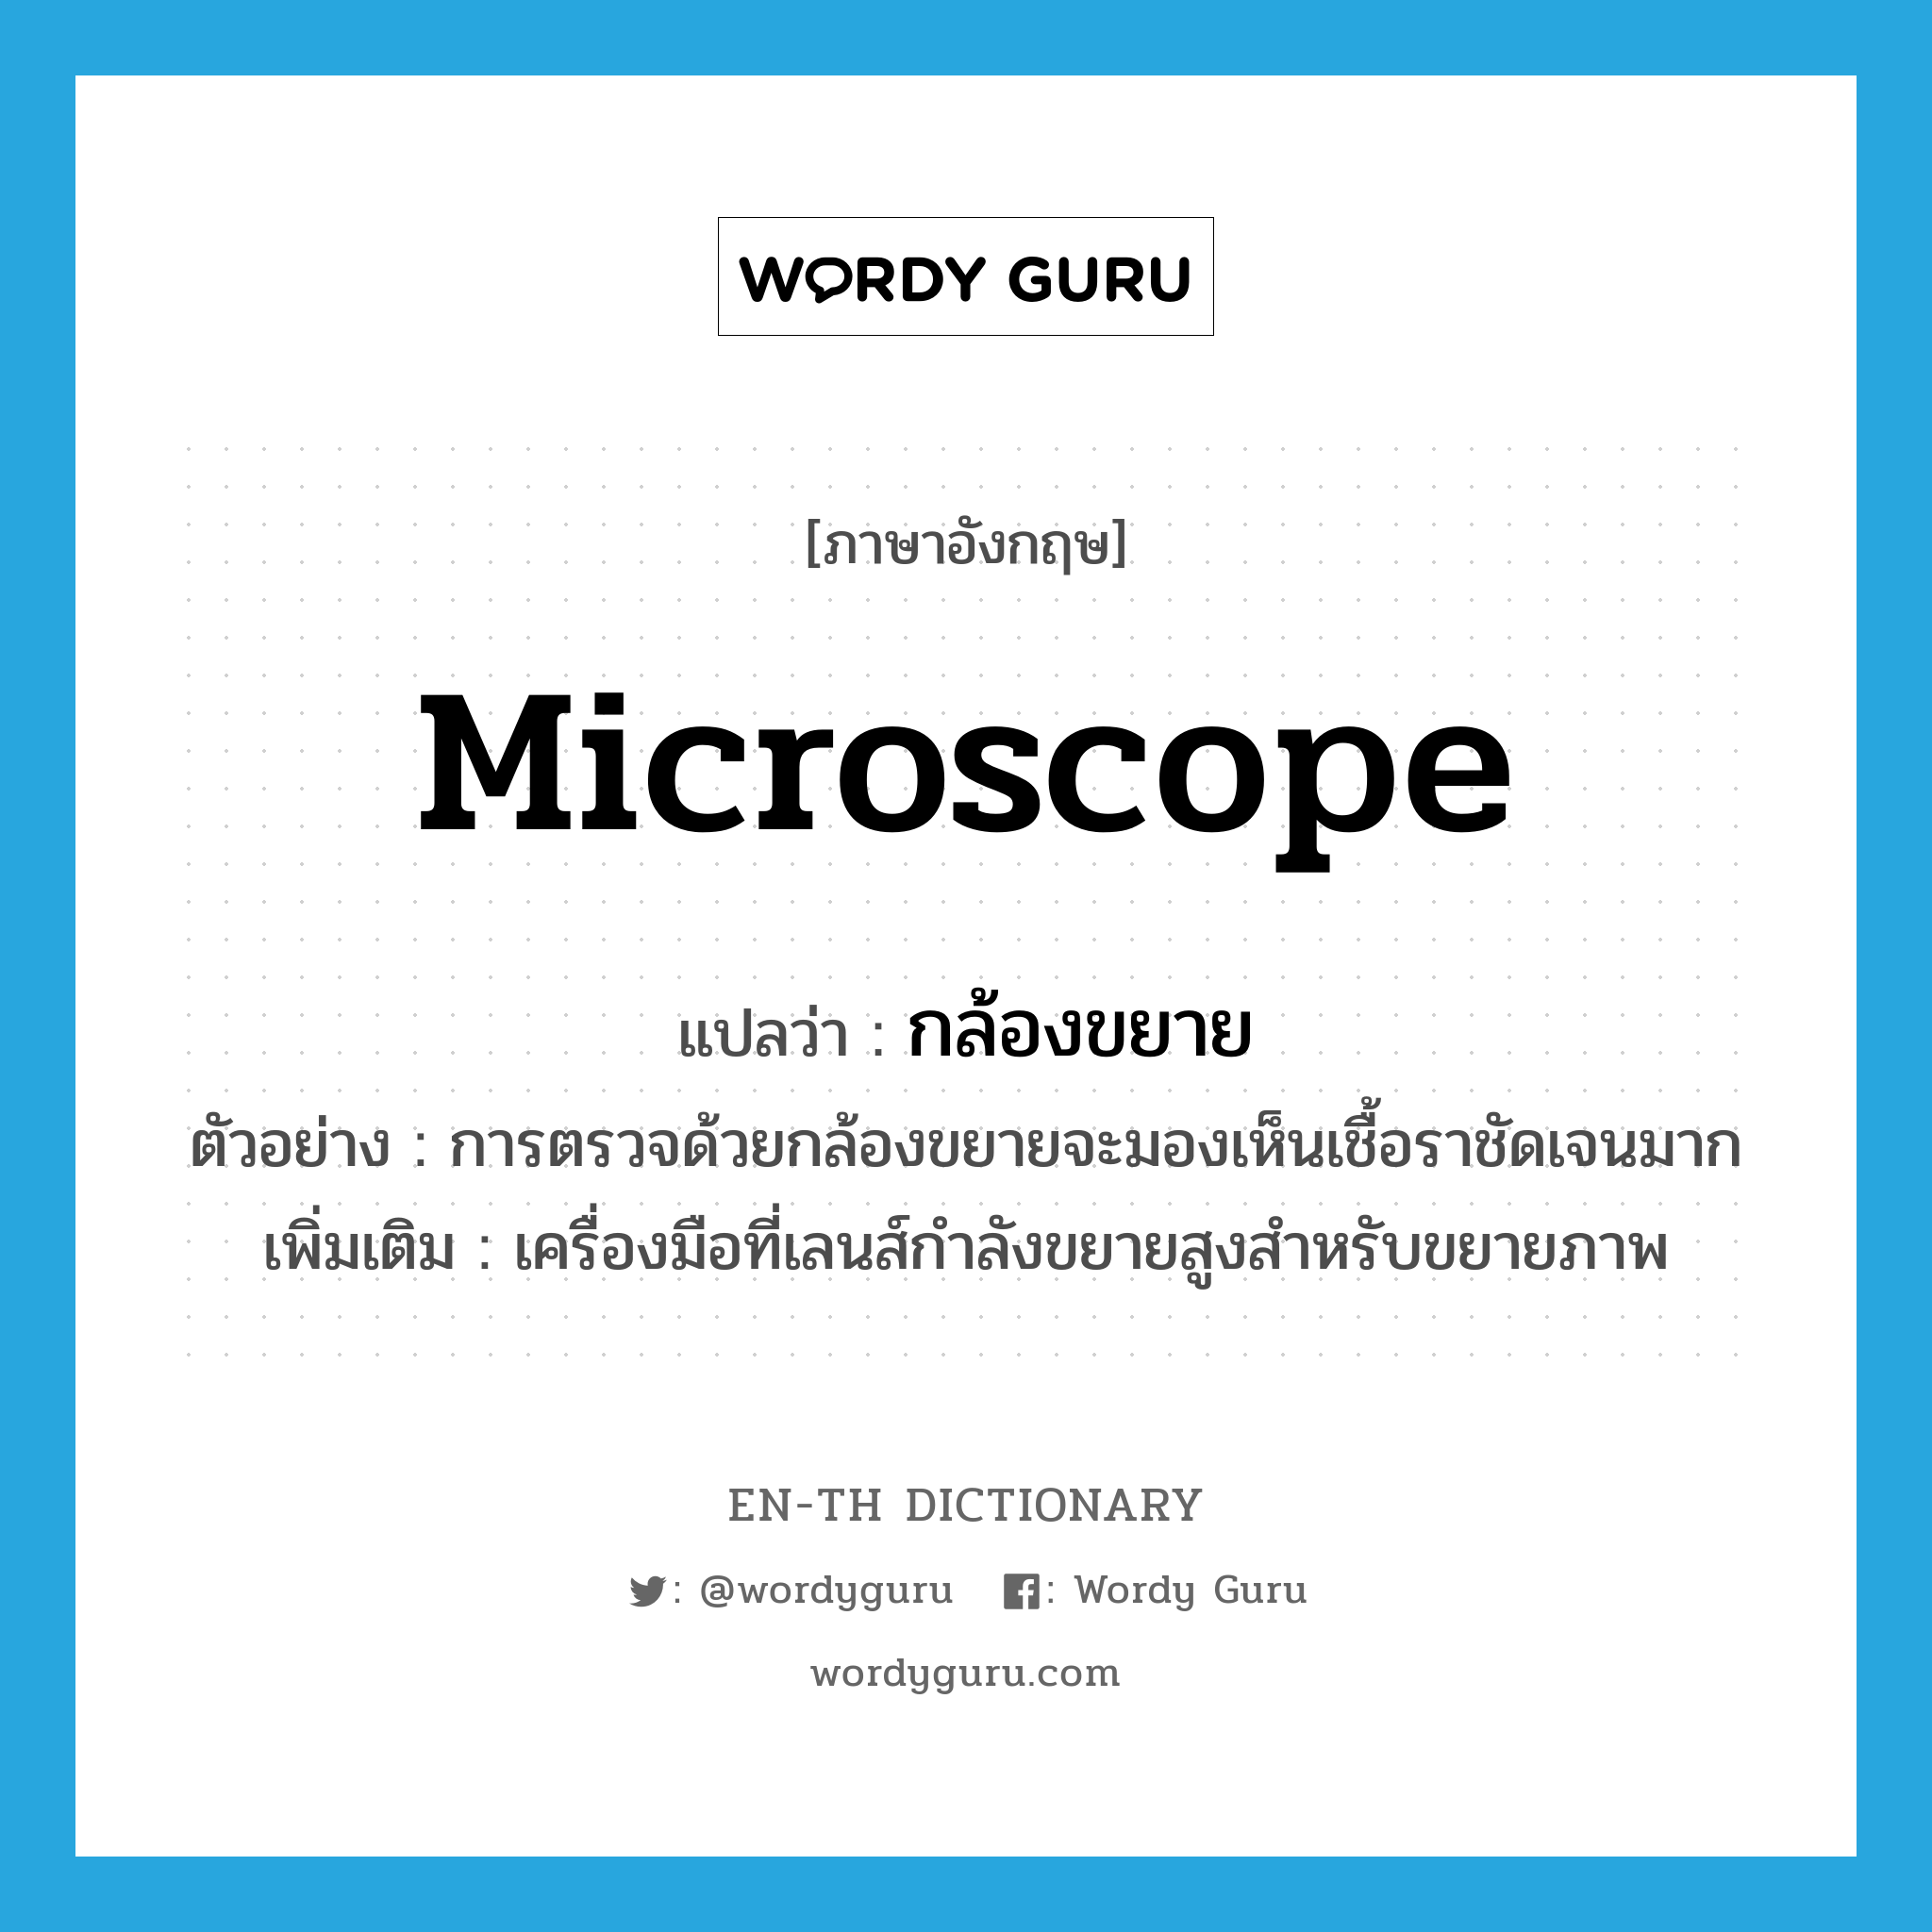 microscope แปลว่า?, คำศัพท์ภาษาอังกฤษ microscope แปลว่า กล้องขยาย ประเภท N ตัวอย่าง การตรวจด้วยกล้องขยายจะมองเห็นเชื้อราชัดเจนมาก เพิ่มเติม เครื่องมือที่เลนส์กำลังขยายสูงสำหรับขยายภาพ หมวด N